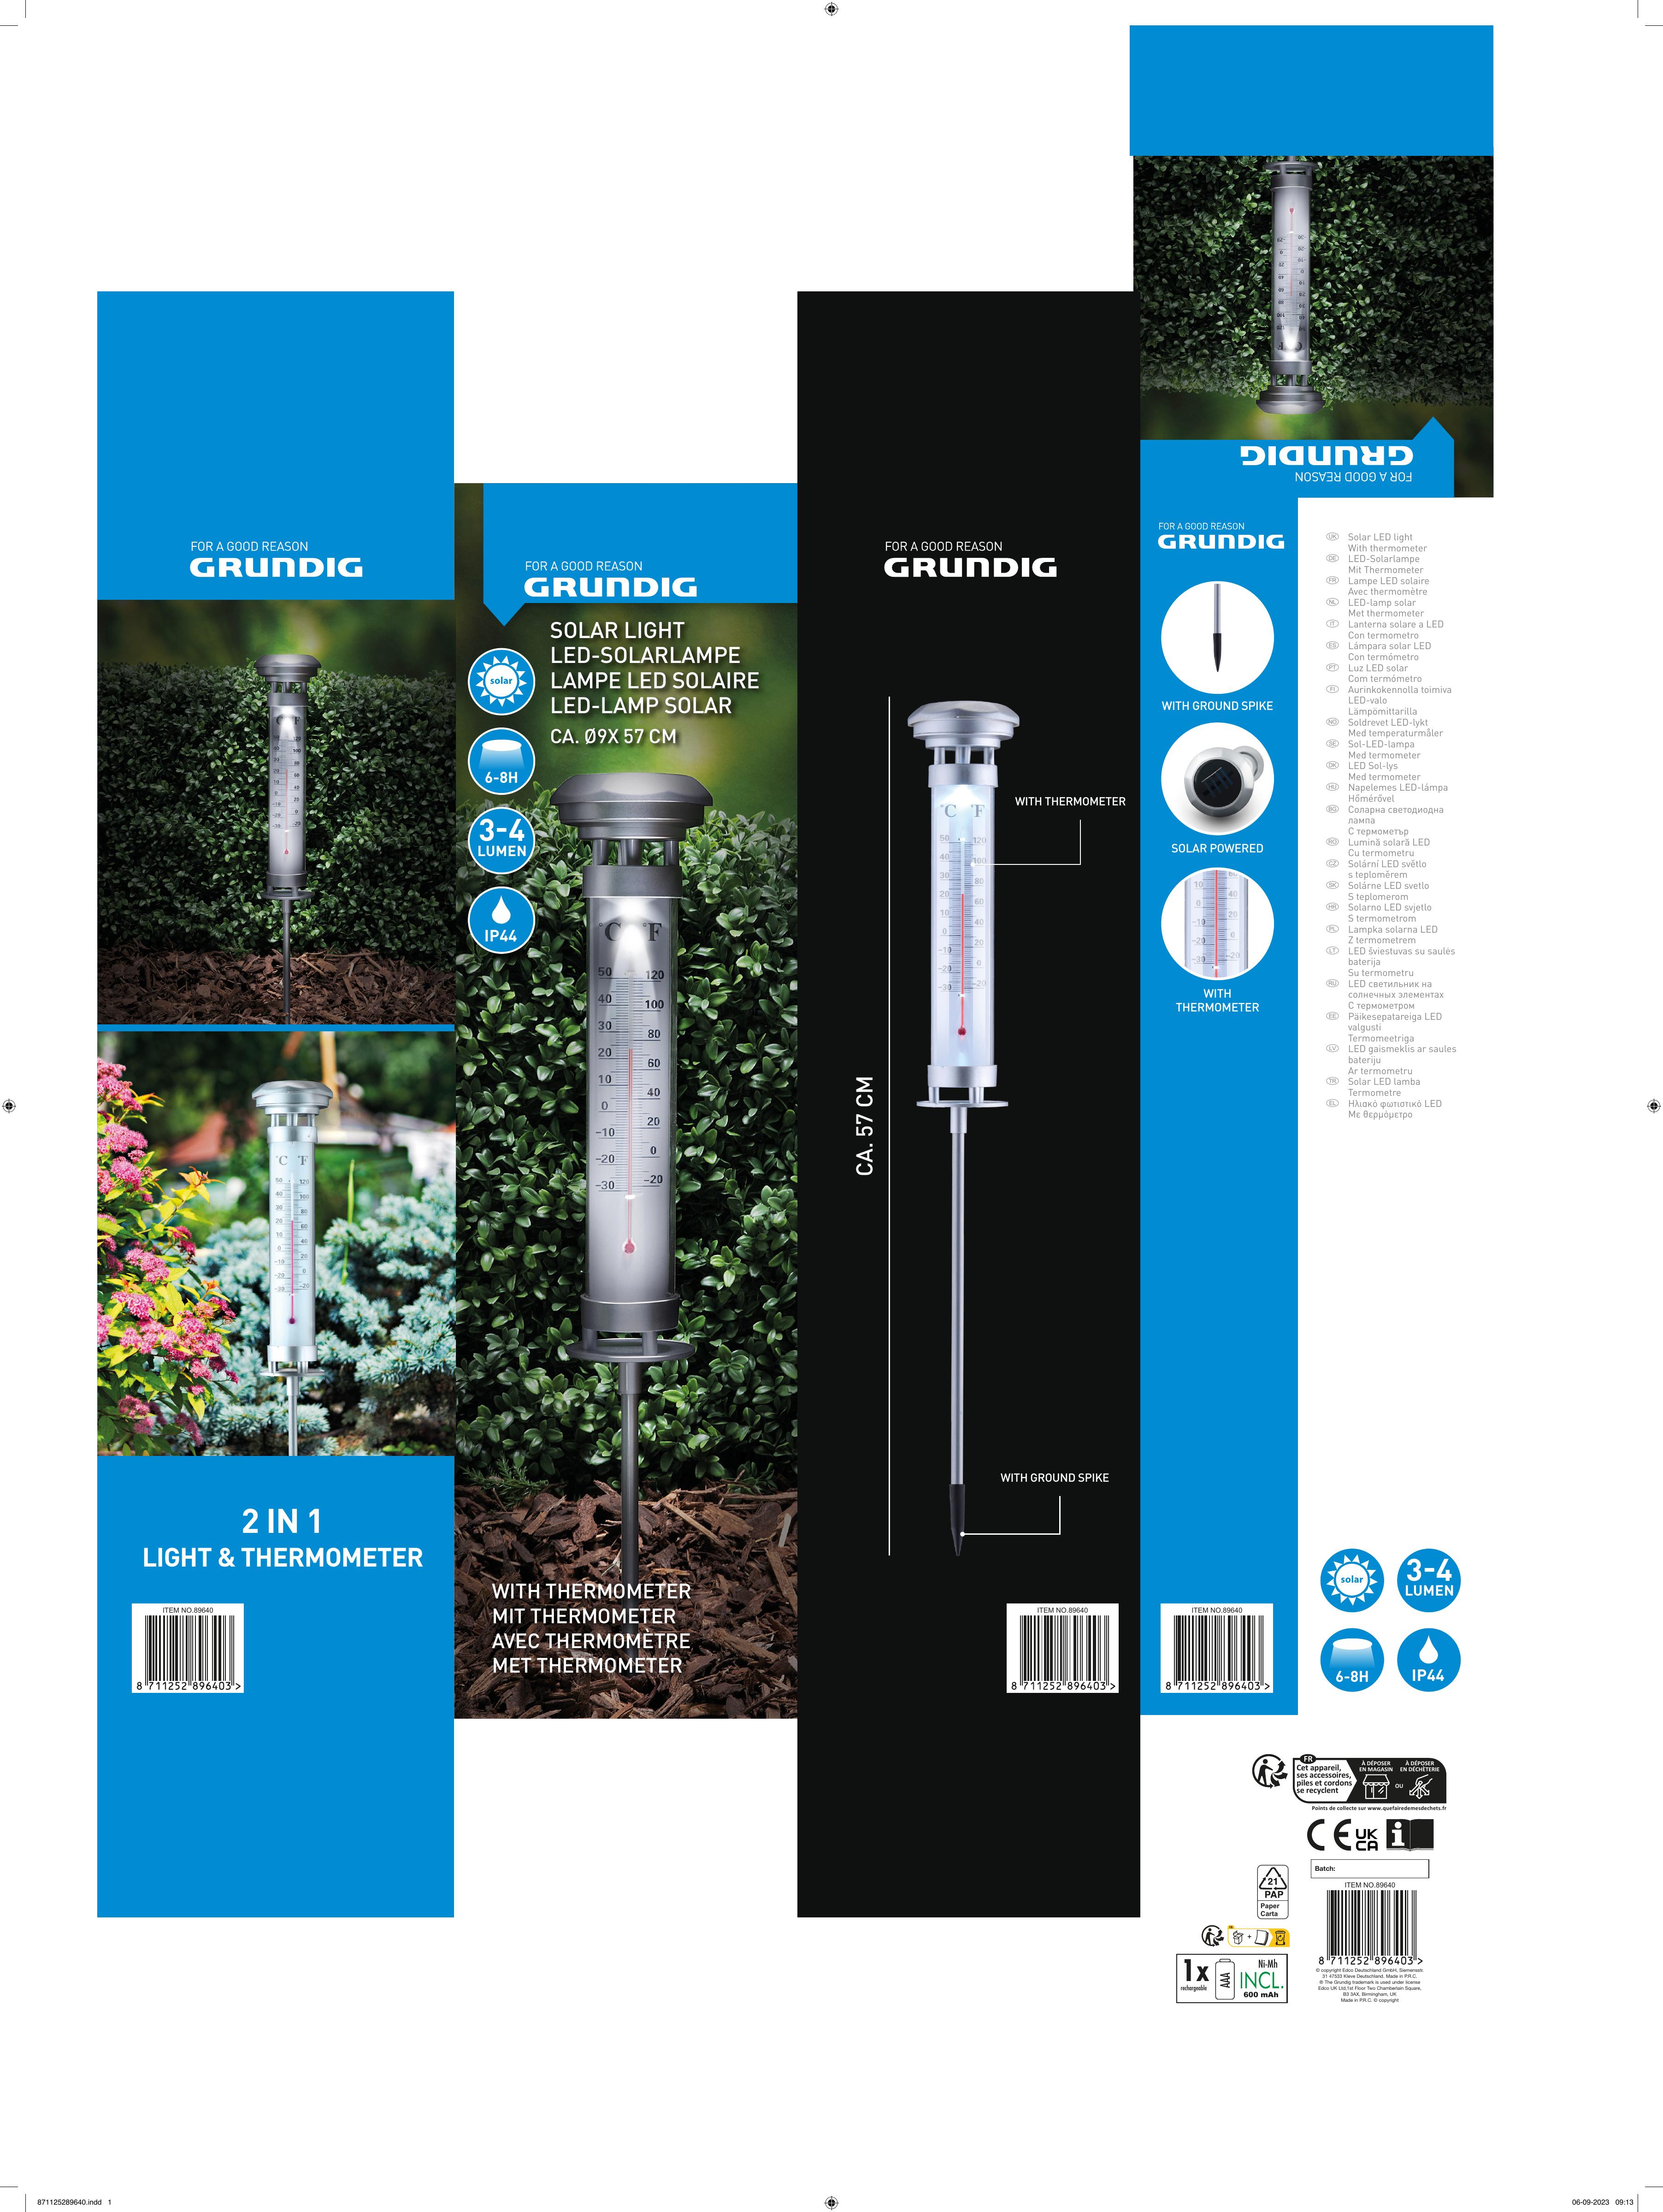 Садовый светильник с термометром 2 в 1 Grundig на солнечной батарее 9x57 см в ассортименте - фото 7